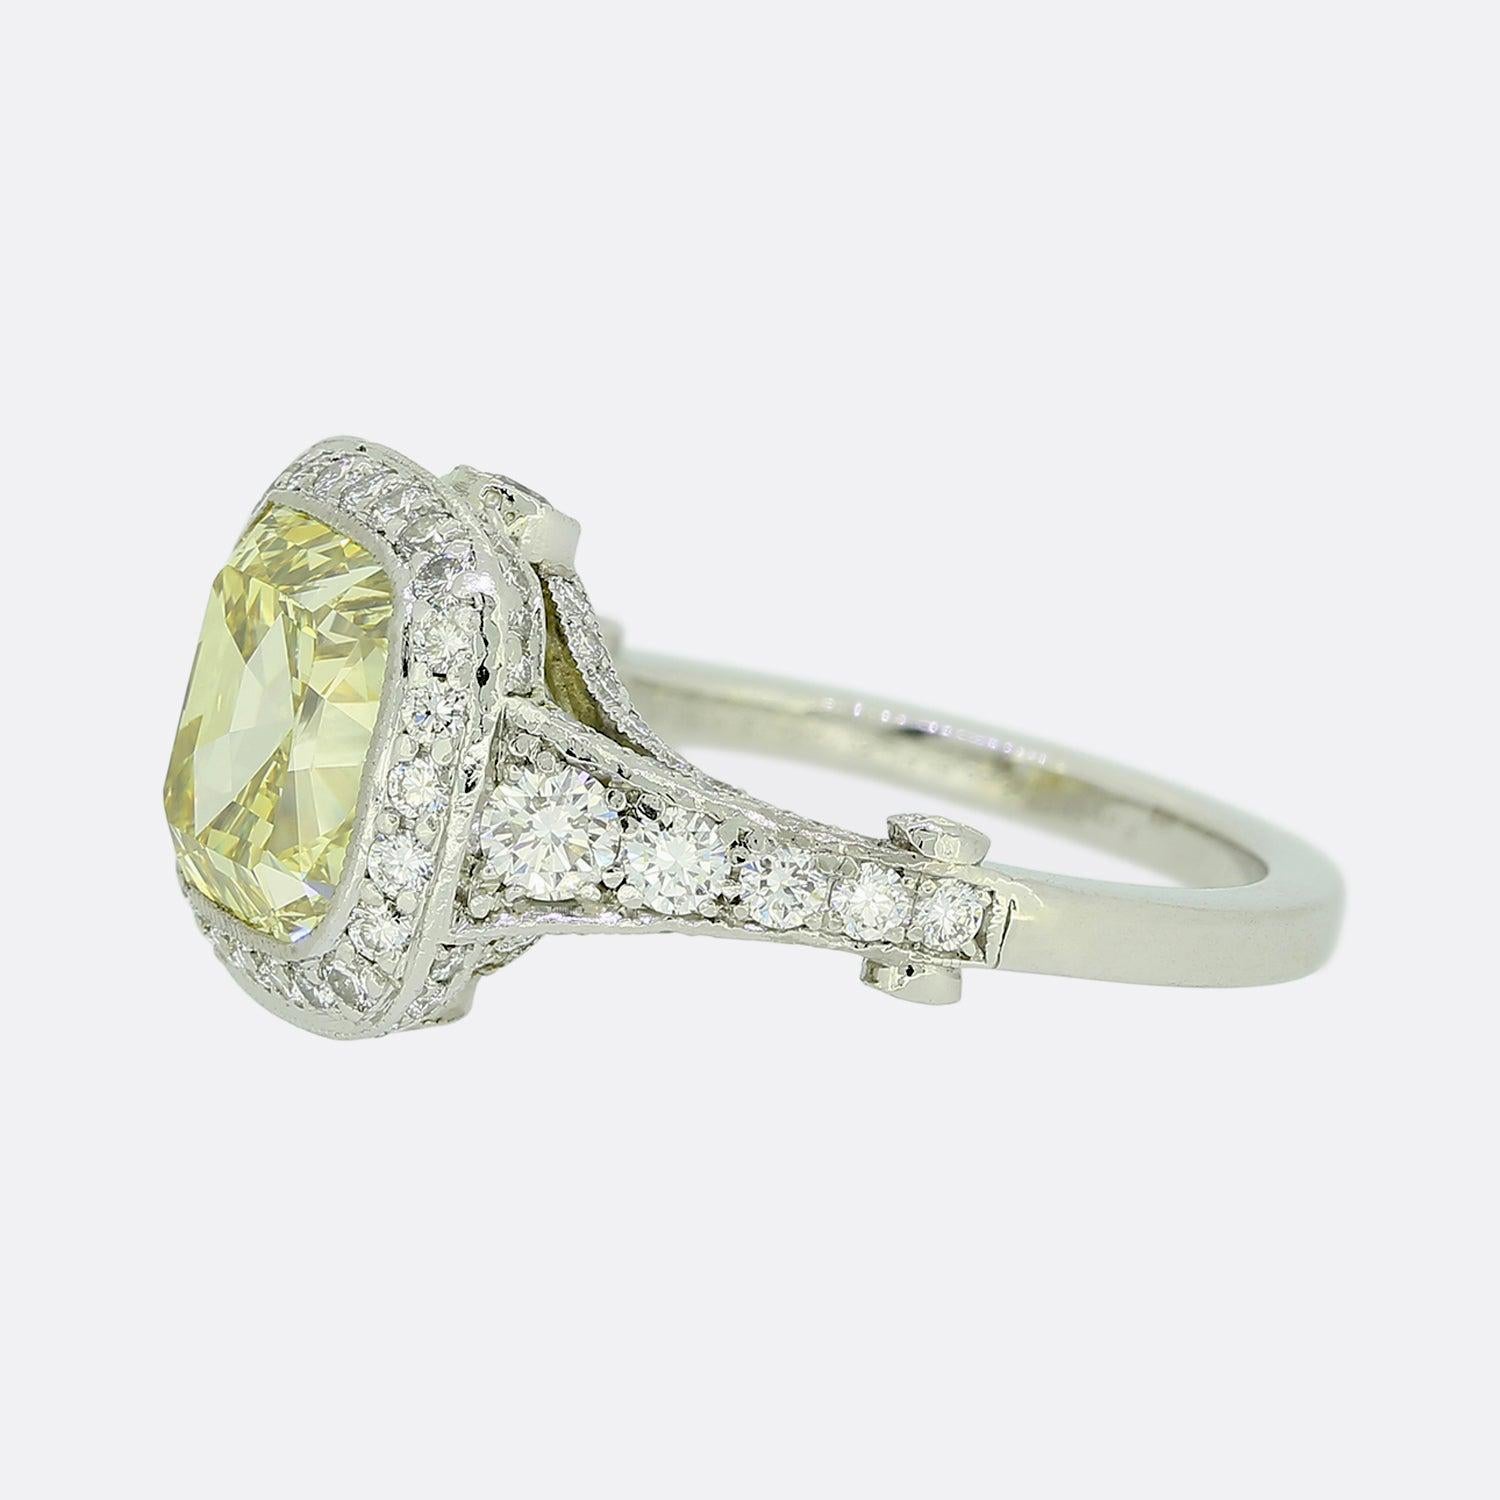 Nous avons ici une bague de fiançailles en diamant étincelante du créateur de bijoux de renommée mondiale, Tiffany & Co. La bague présente une pierre centrale de 4,0 carats taillée en coussin, de couleur jaune intense et de pureté VS1. Il est